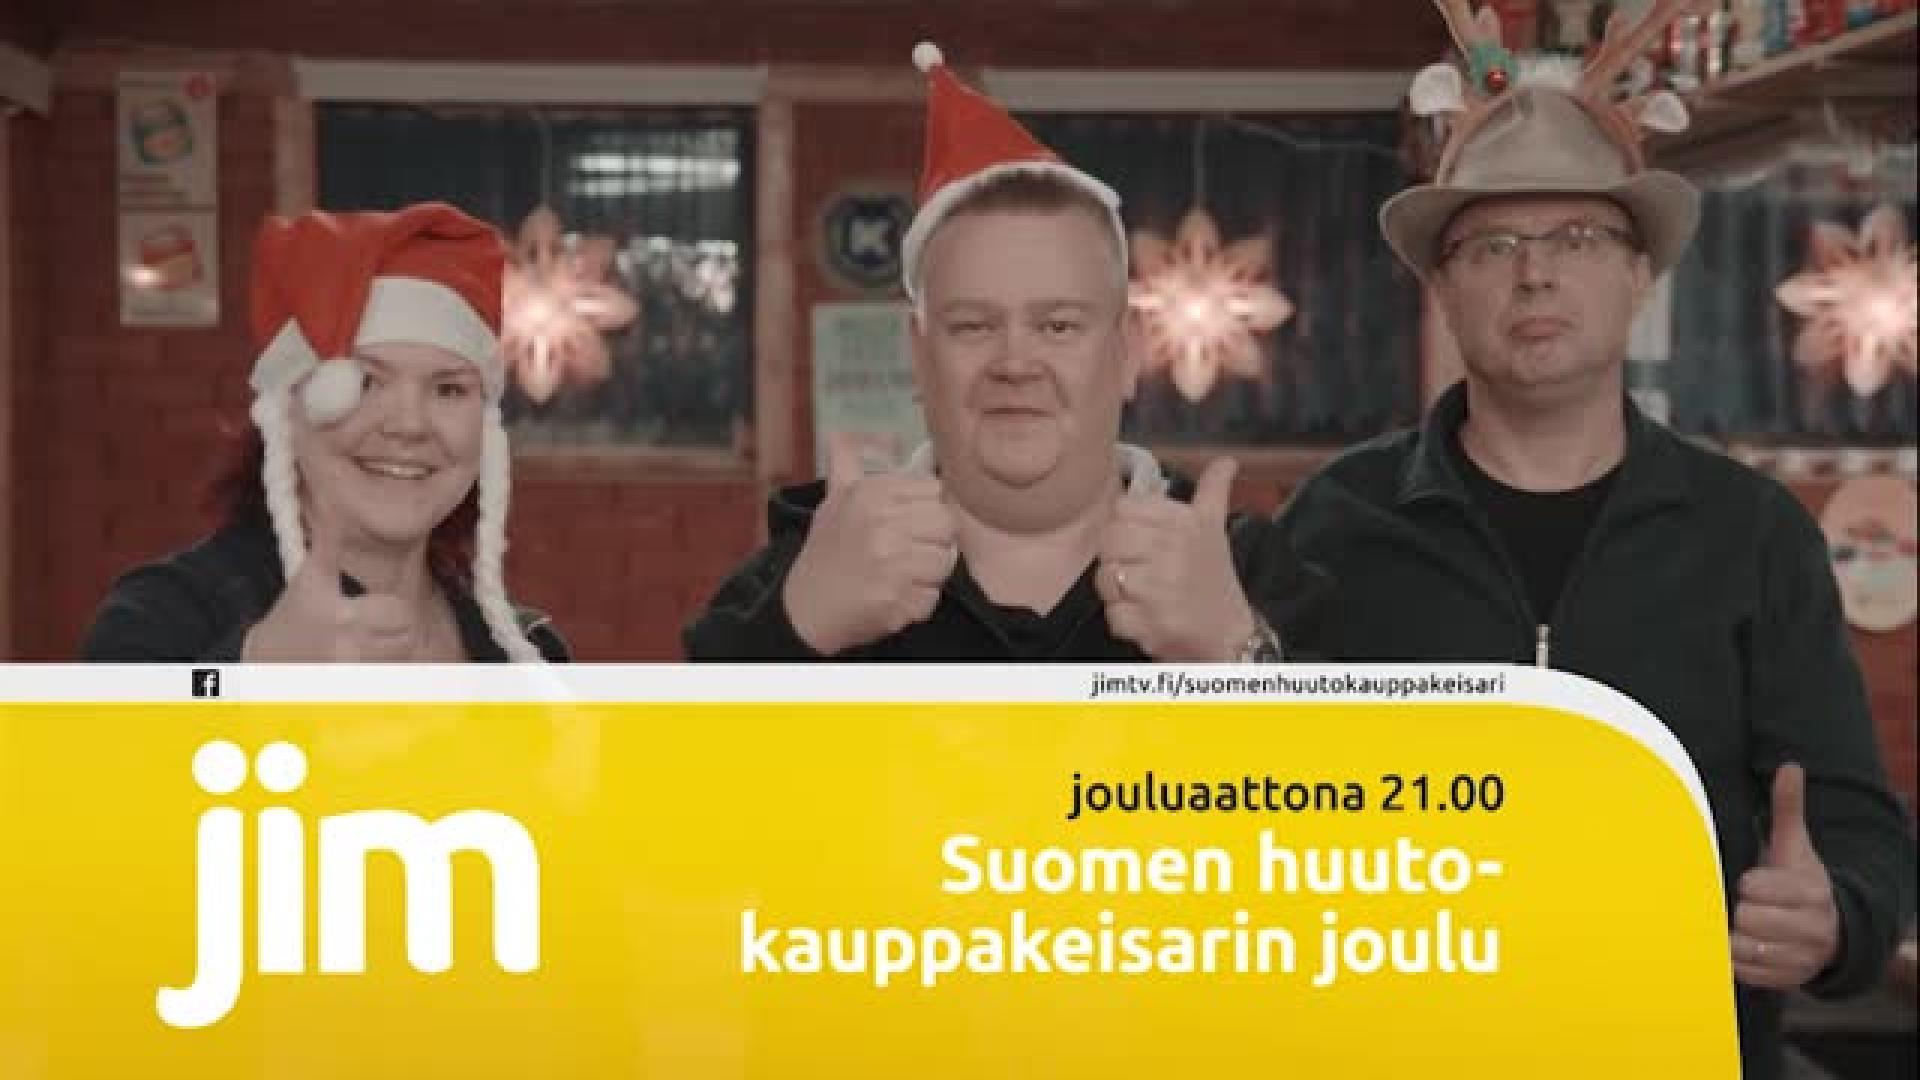 Suomen huutokauppakeisarin jouluspesiaali ilahduttaa aattoiltana | Ruutu